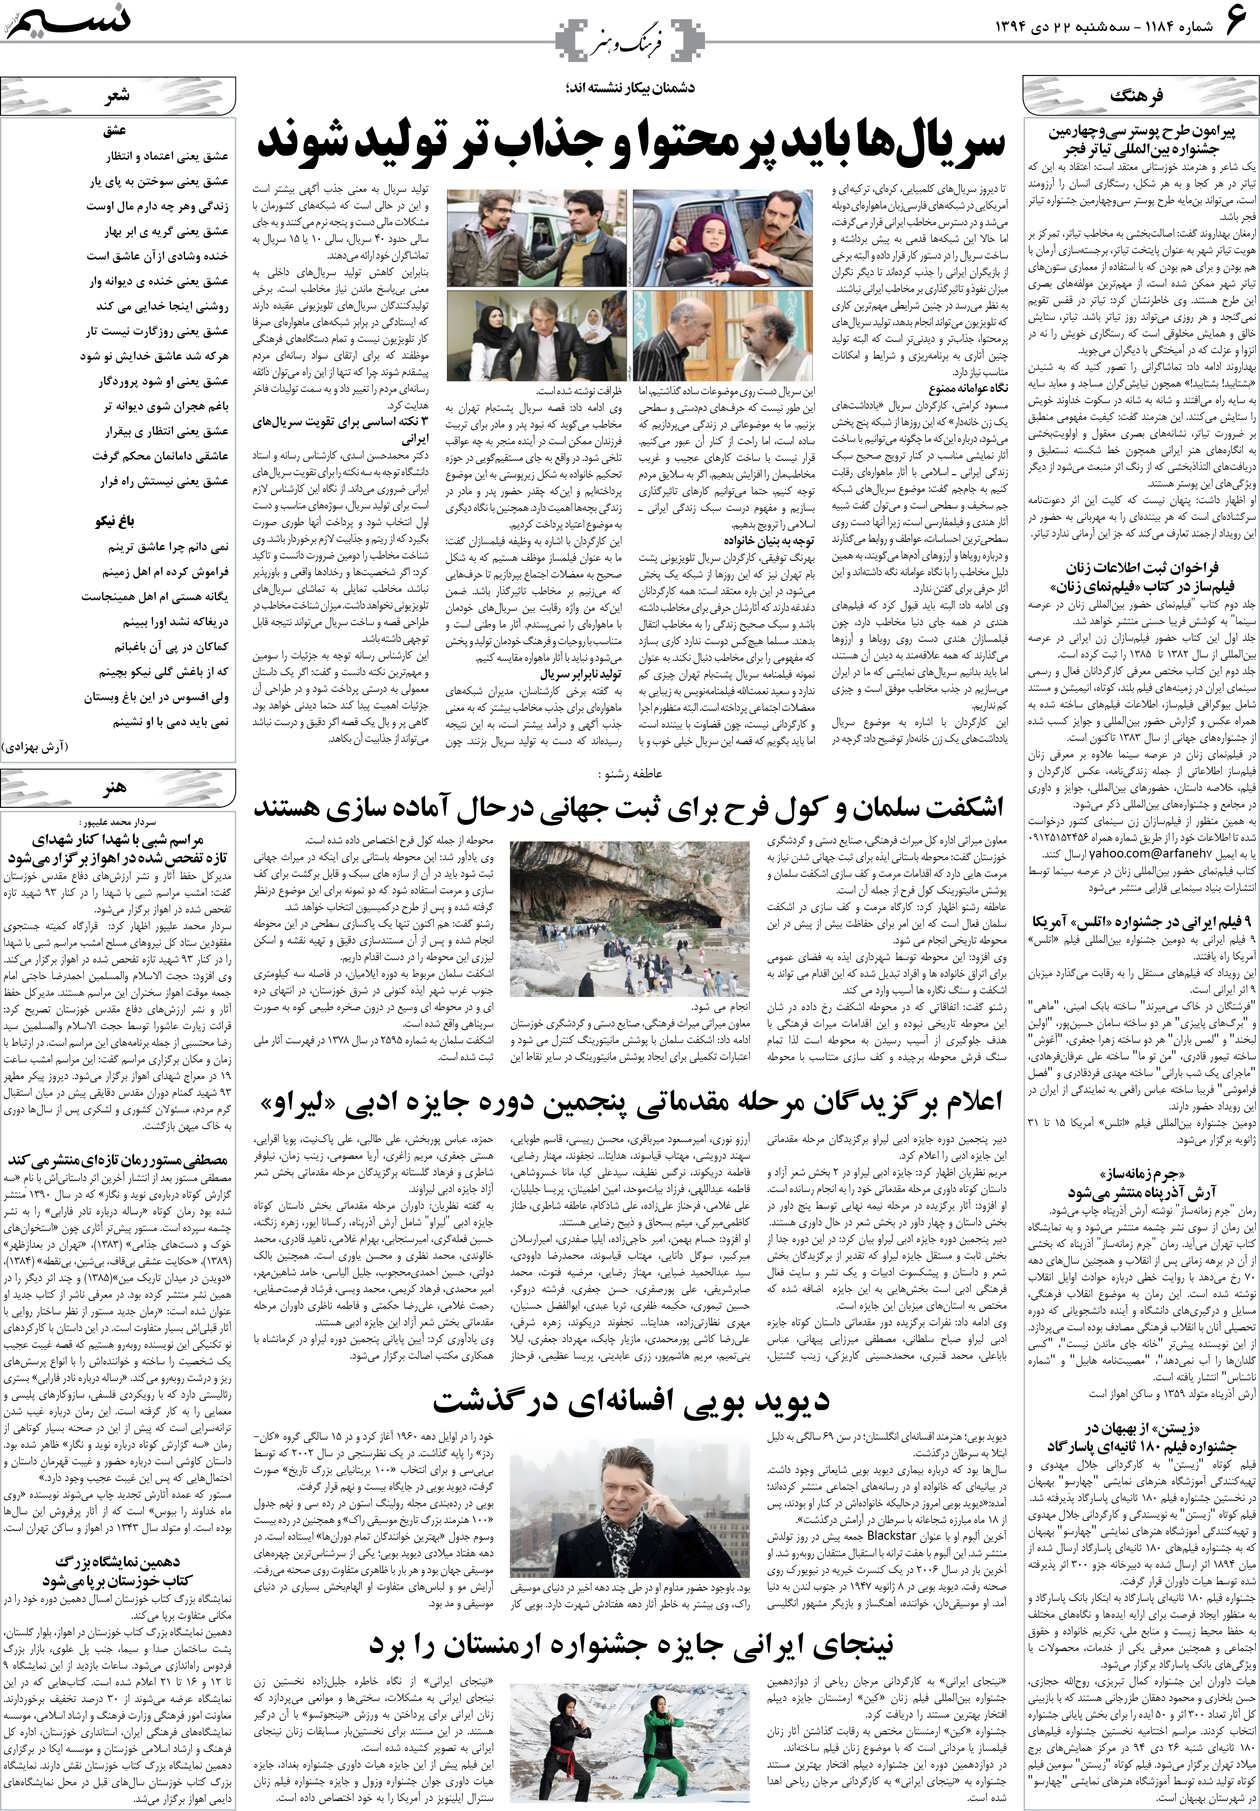 صفحه فرهنگ و هنر روزنامه نسیم شماره 1184